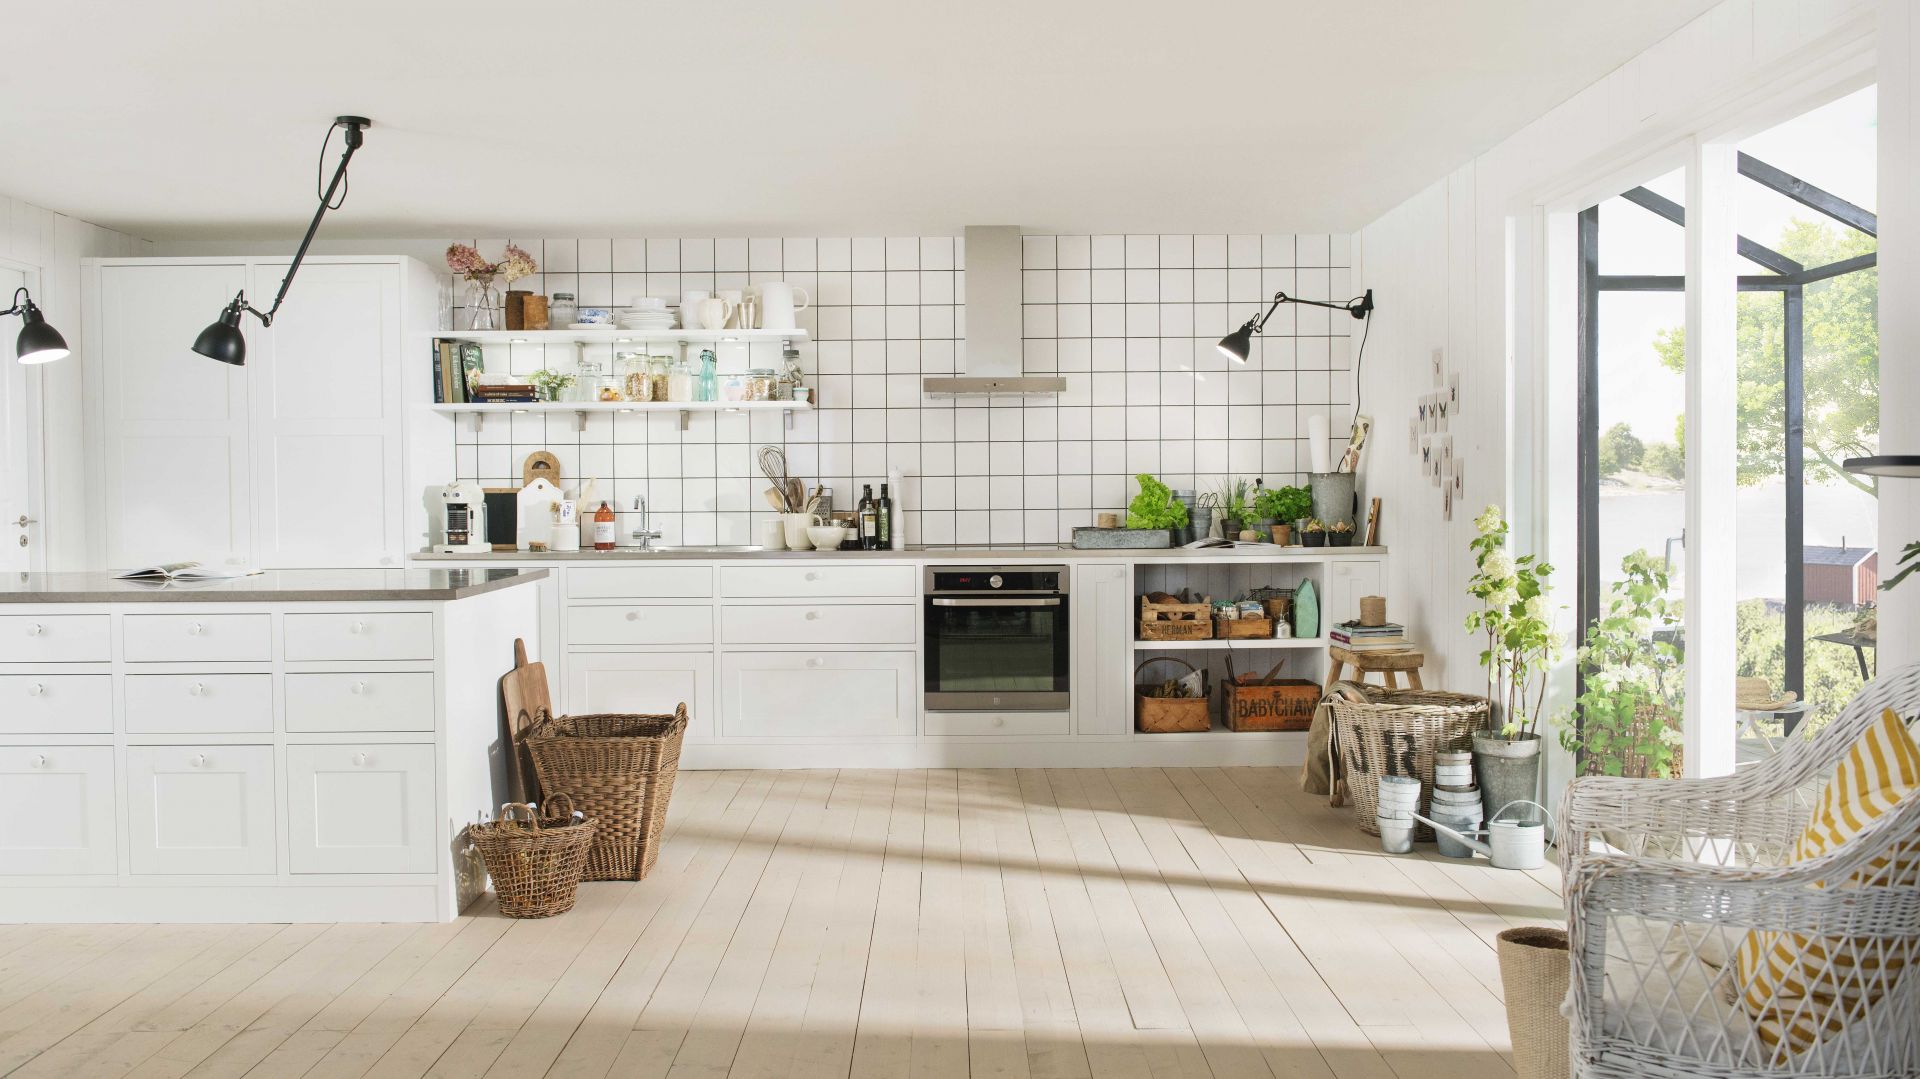 Biała kuchnia w stylu skandynawskim. 5 pięknych zdjęć